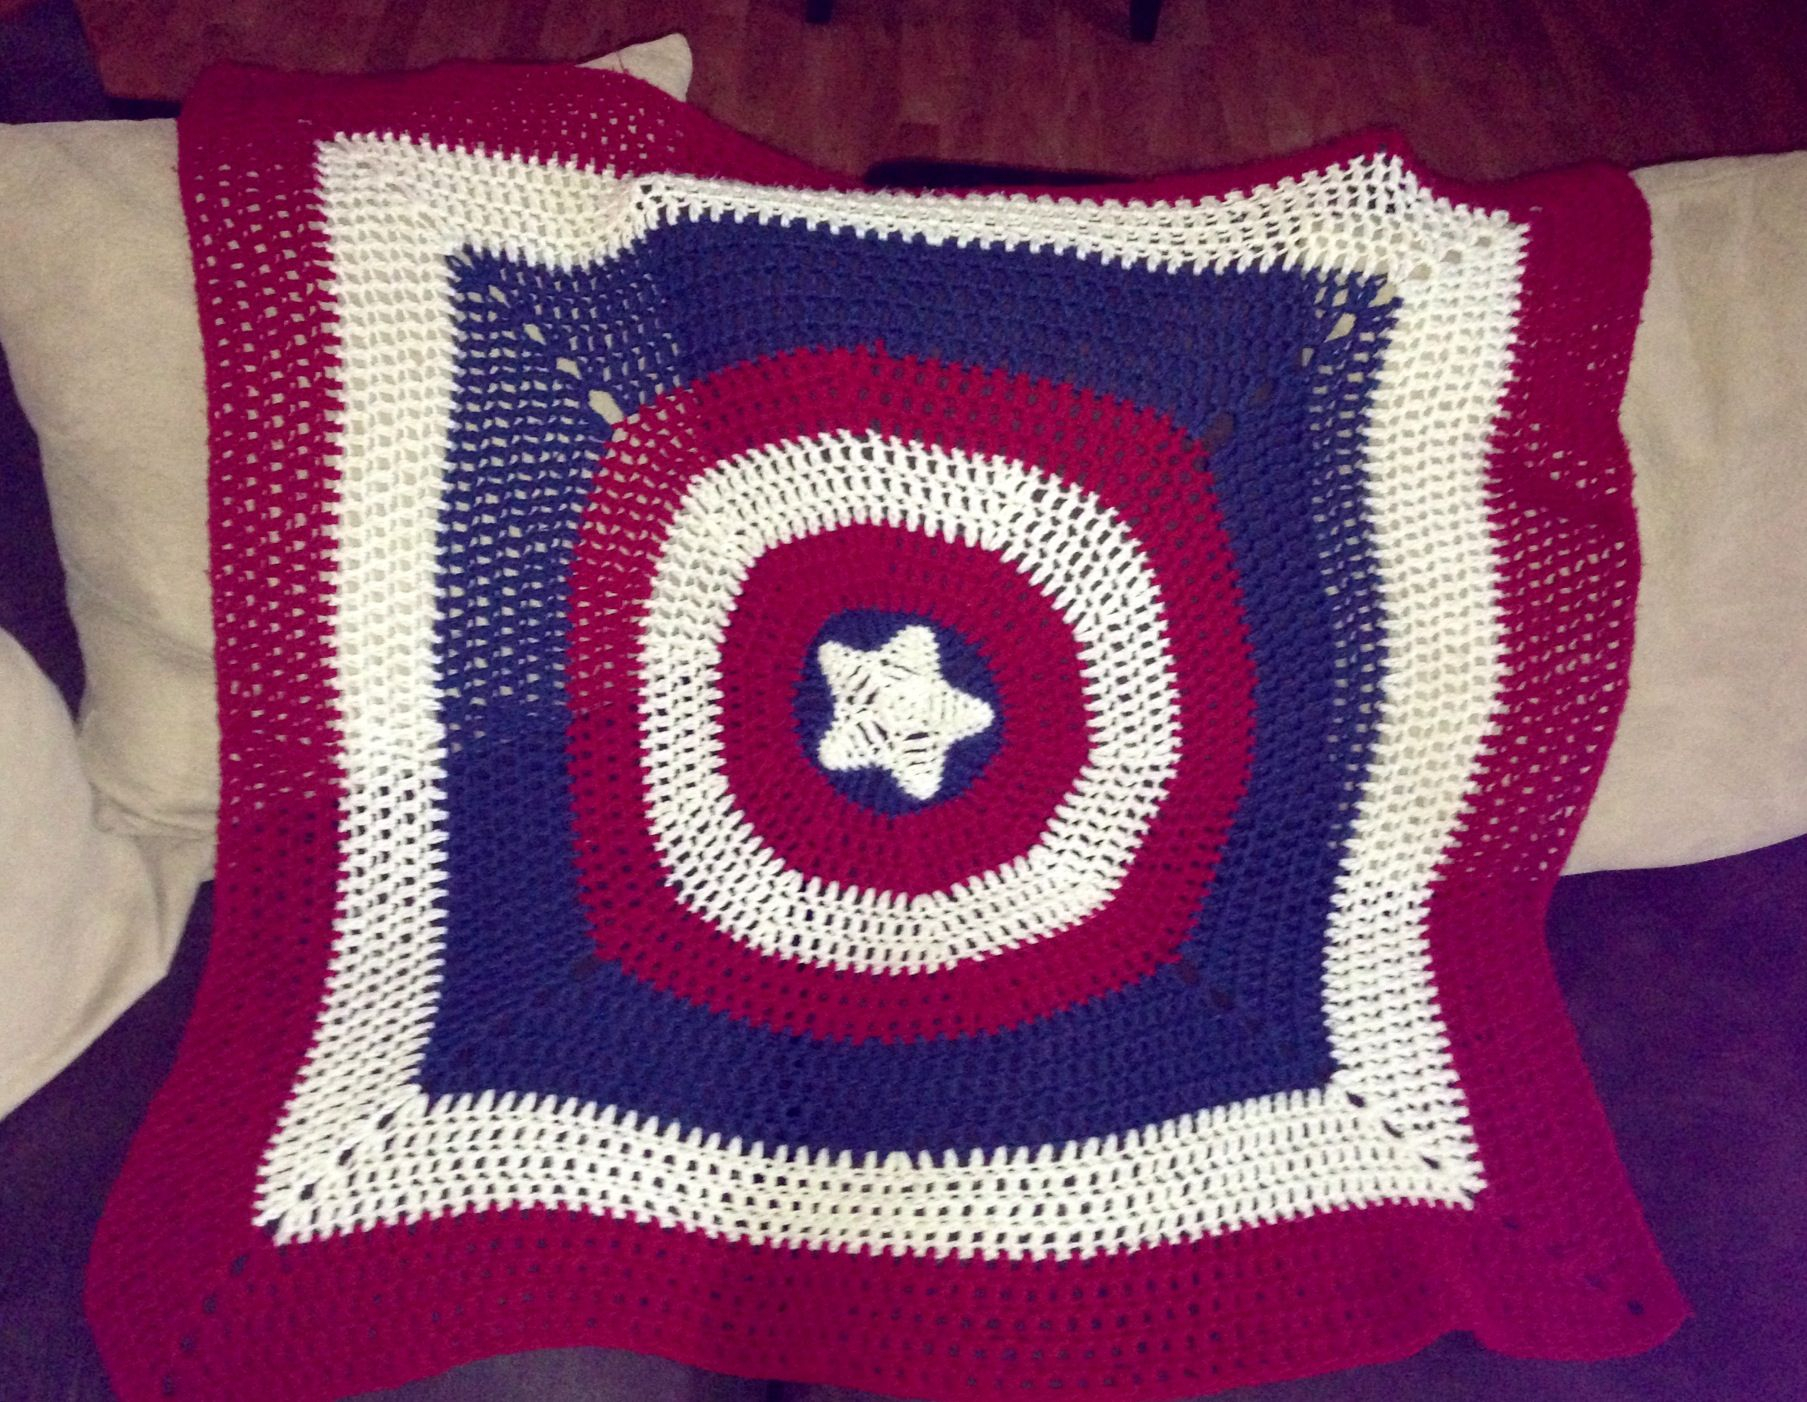 Doctor Who Crochet Blanket Pattern Captain America Crochet Blanket Stuff I Make Pinterest Crochet